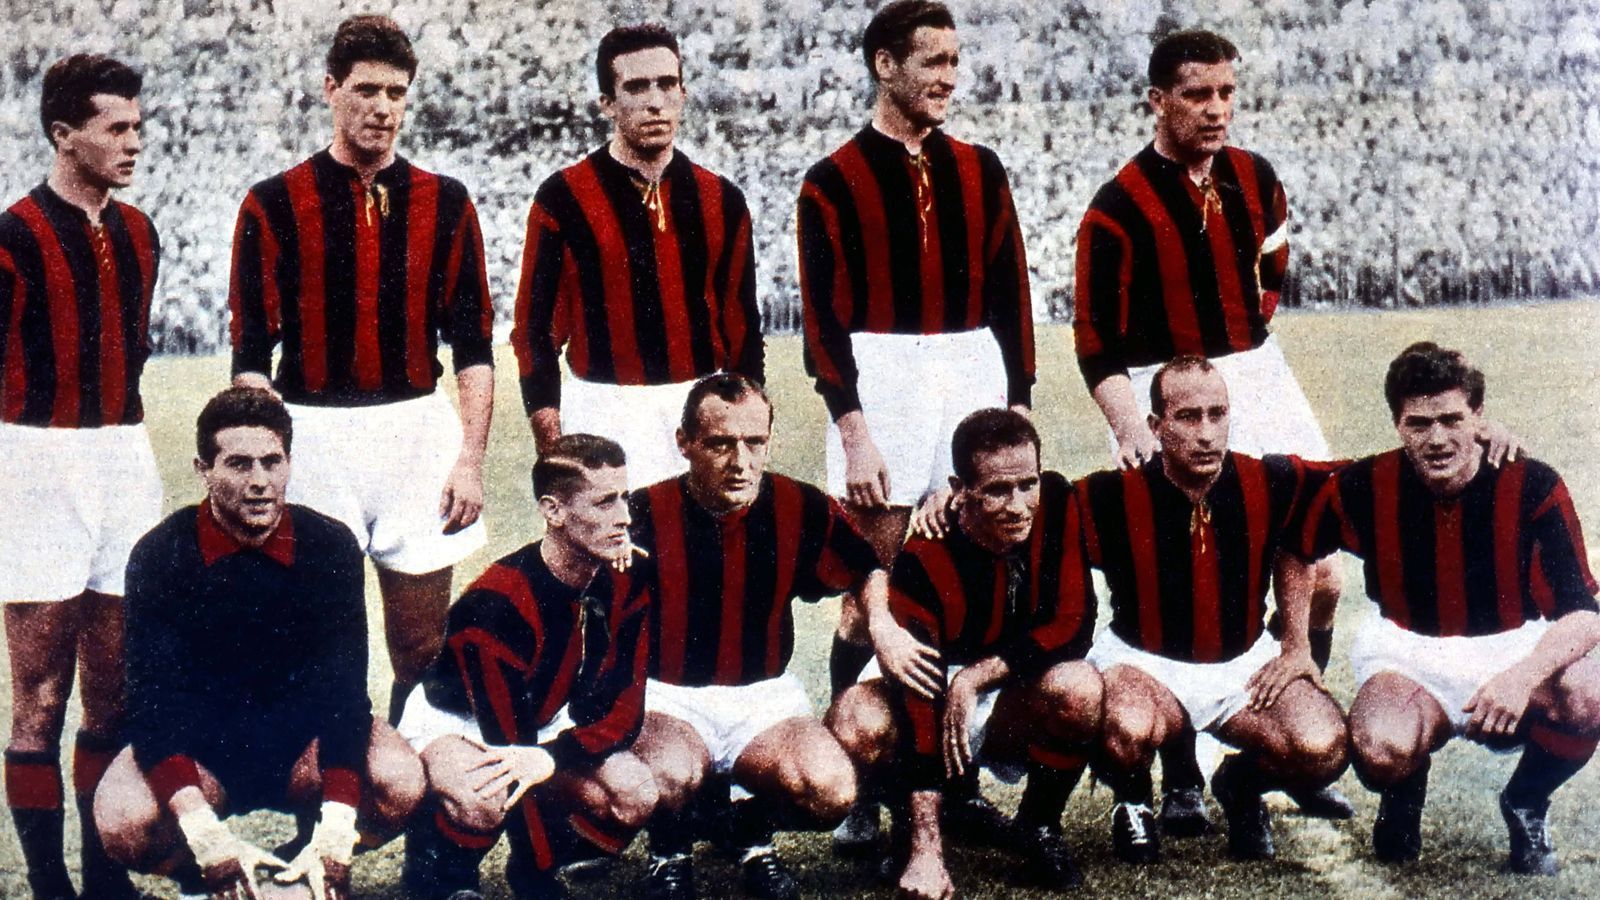 
                <strong>Höchster Auswärtssieg Serie A</strong><br>
                Den Rekord für den höchsten Auswärtssieg teilen sich zwei Teams: Der AC Mailand gewann am 5. Juni 1955 beim Genoa CFC mit 8:0, ebenso wie Calcio Padova am 20. November 1949 beim AC Venedig.
              